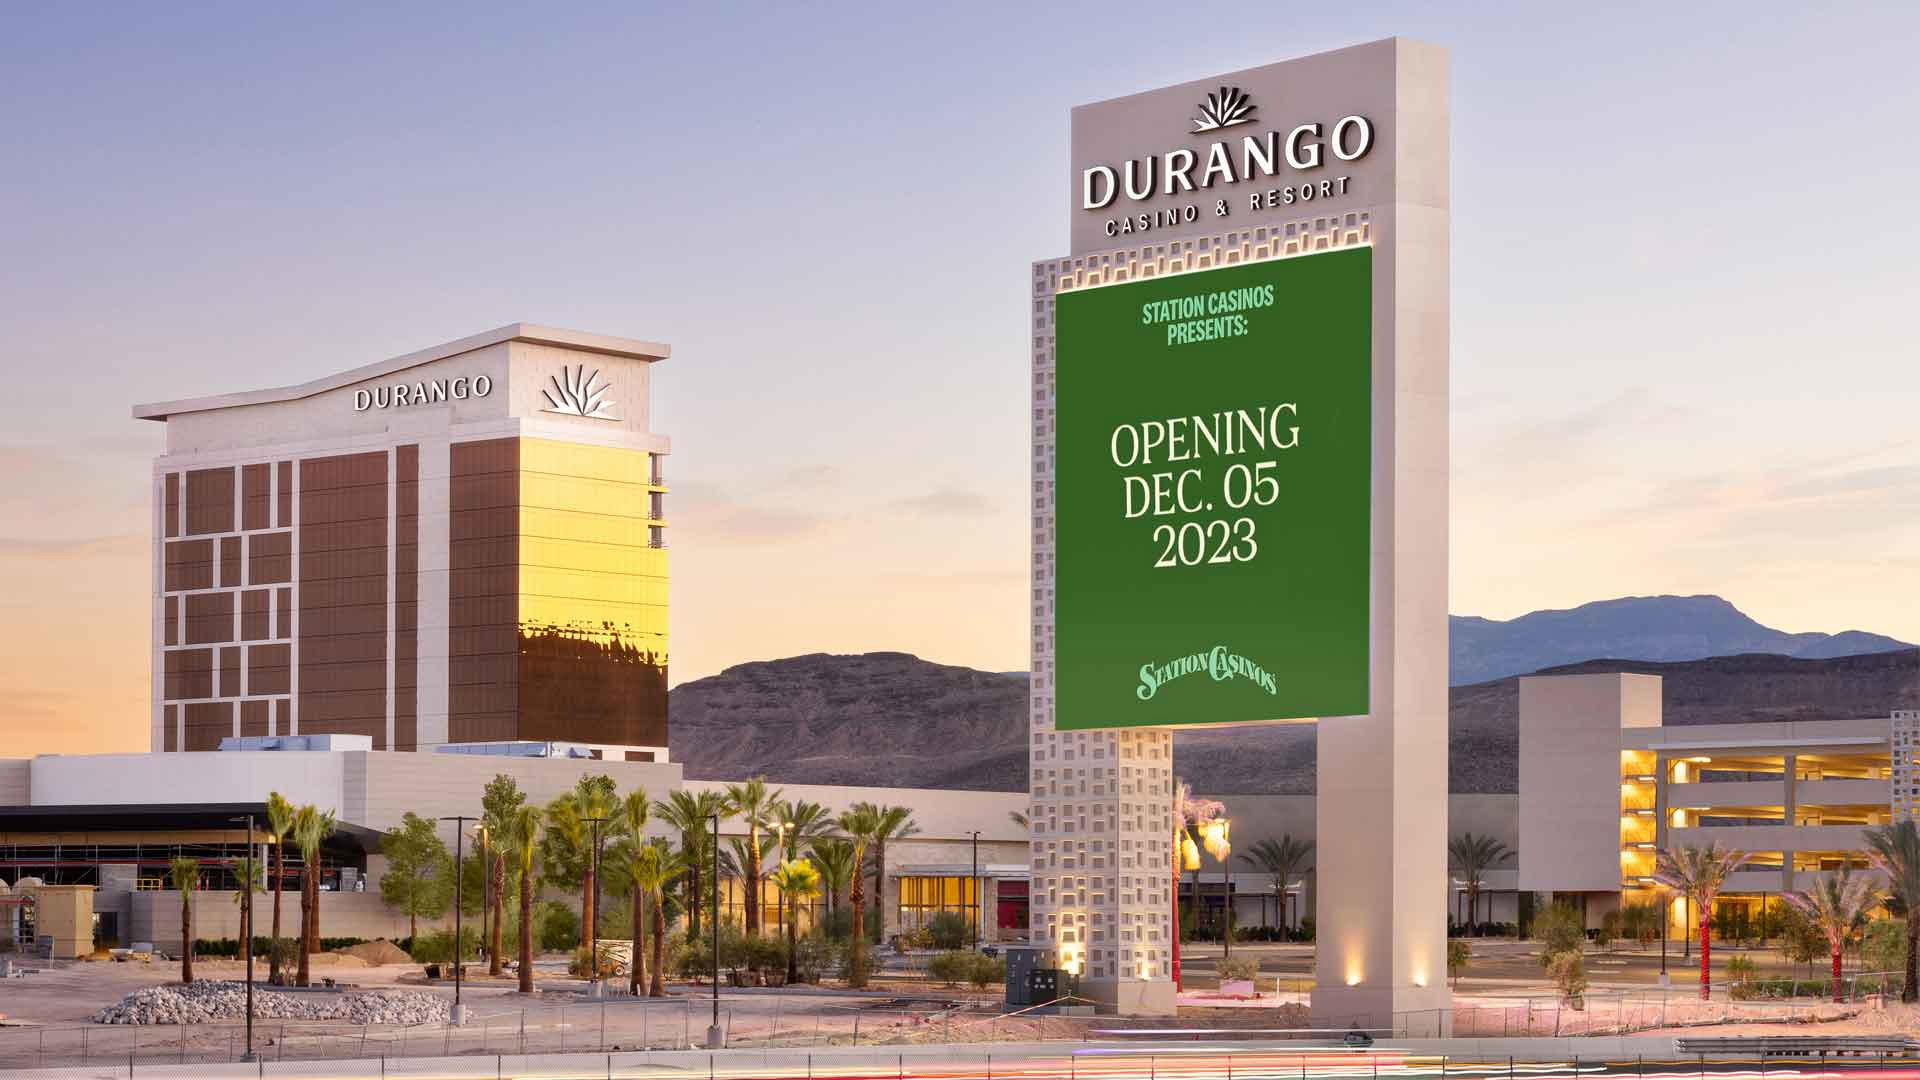 durango station casino opening date